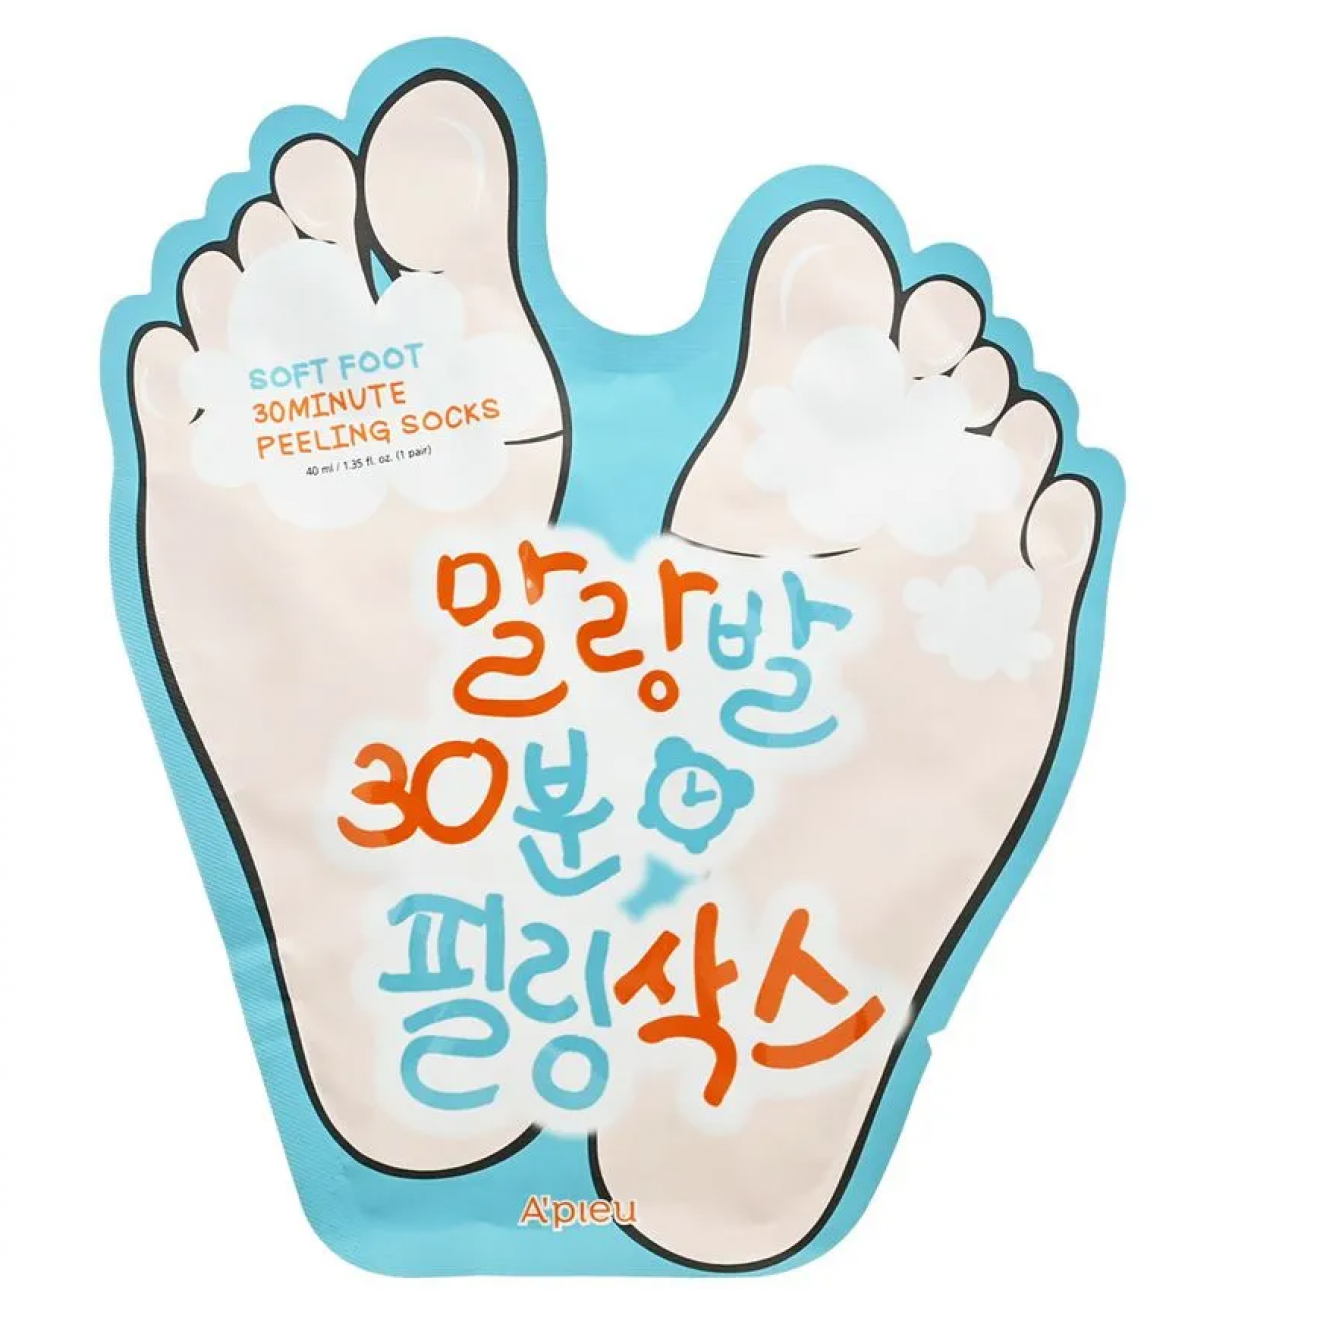 Пилинг - носочки для ног, Apieu, Soft Foot 30 Minute Peeling Socks, одна пара